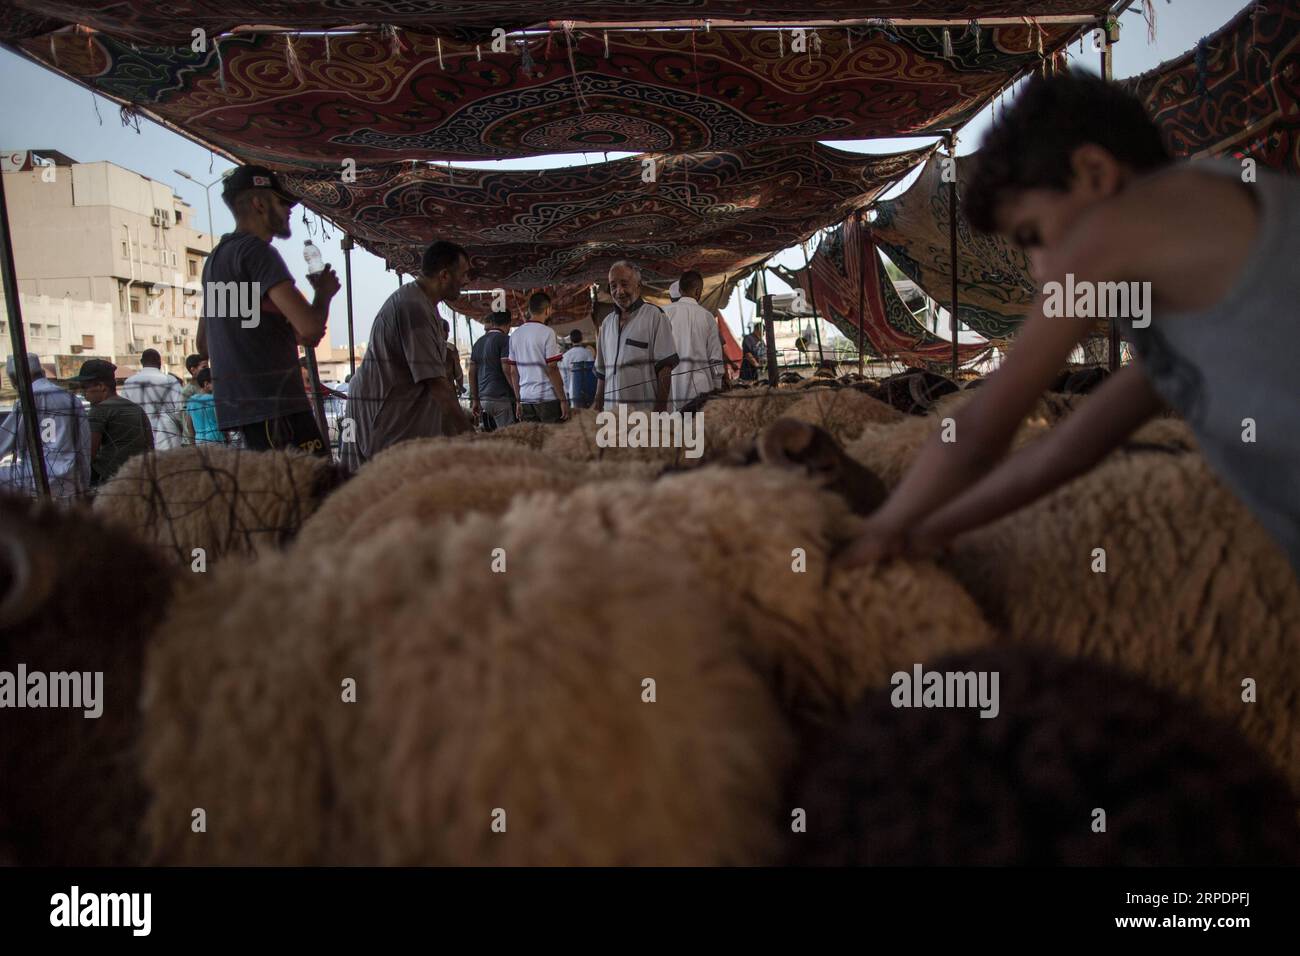 Islamisches Opferfest - Eid al Adha in Libyen (190809) -- TRIPOLI, 9 agosto 2019 -- la gente acquista pecore in un mercato di bestiame a Tripoli, Libia, il 9 agosto 2019. Il Centro Nazionale di salute animale della Libia venerdì ha detto che 350.000 pecore sono state importate per Eid al-Adha, o il Festival del sacrificio. (Foto di /Xinhua) LIBIA-TRIPOLI-EID AL-ADHA-LIVESTOCK MARKET AmruxSalahuddien PUBLICATIONxNOTxINxCHN Foto Stock